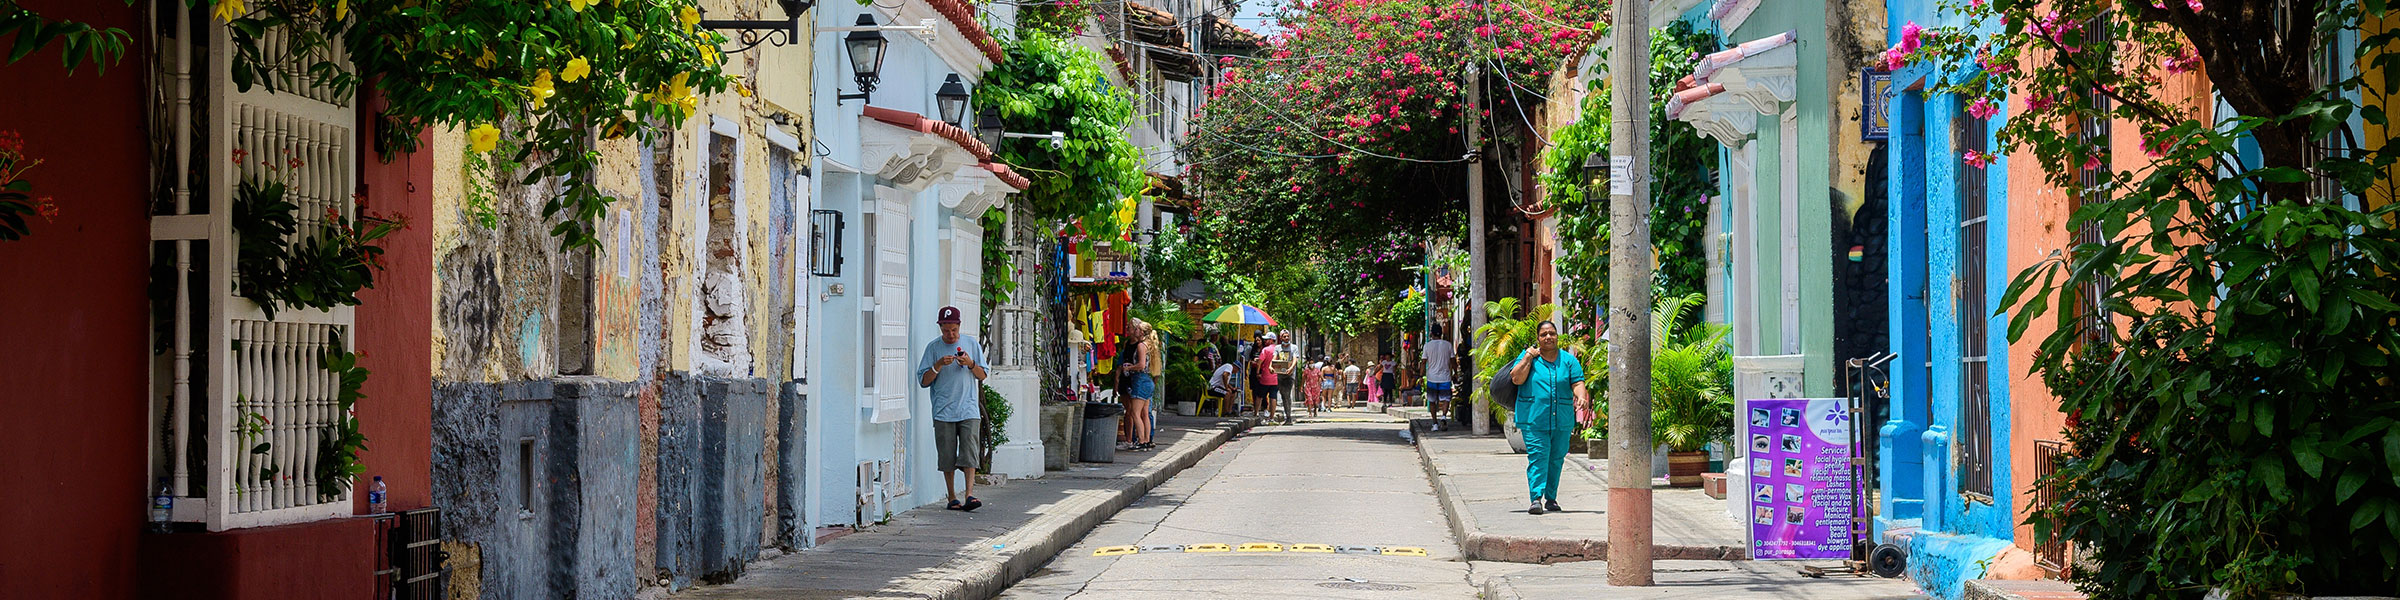 Streets of Cartagena de Indias Colombia